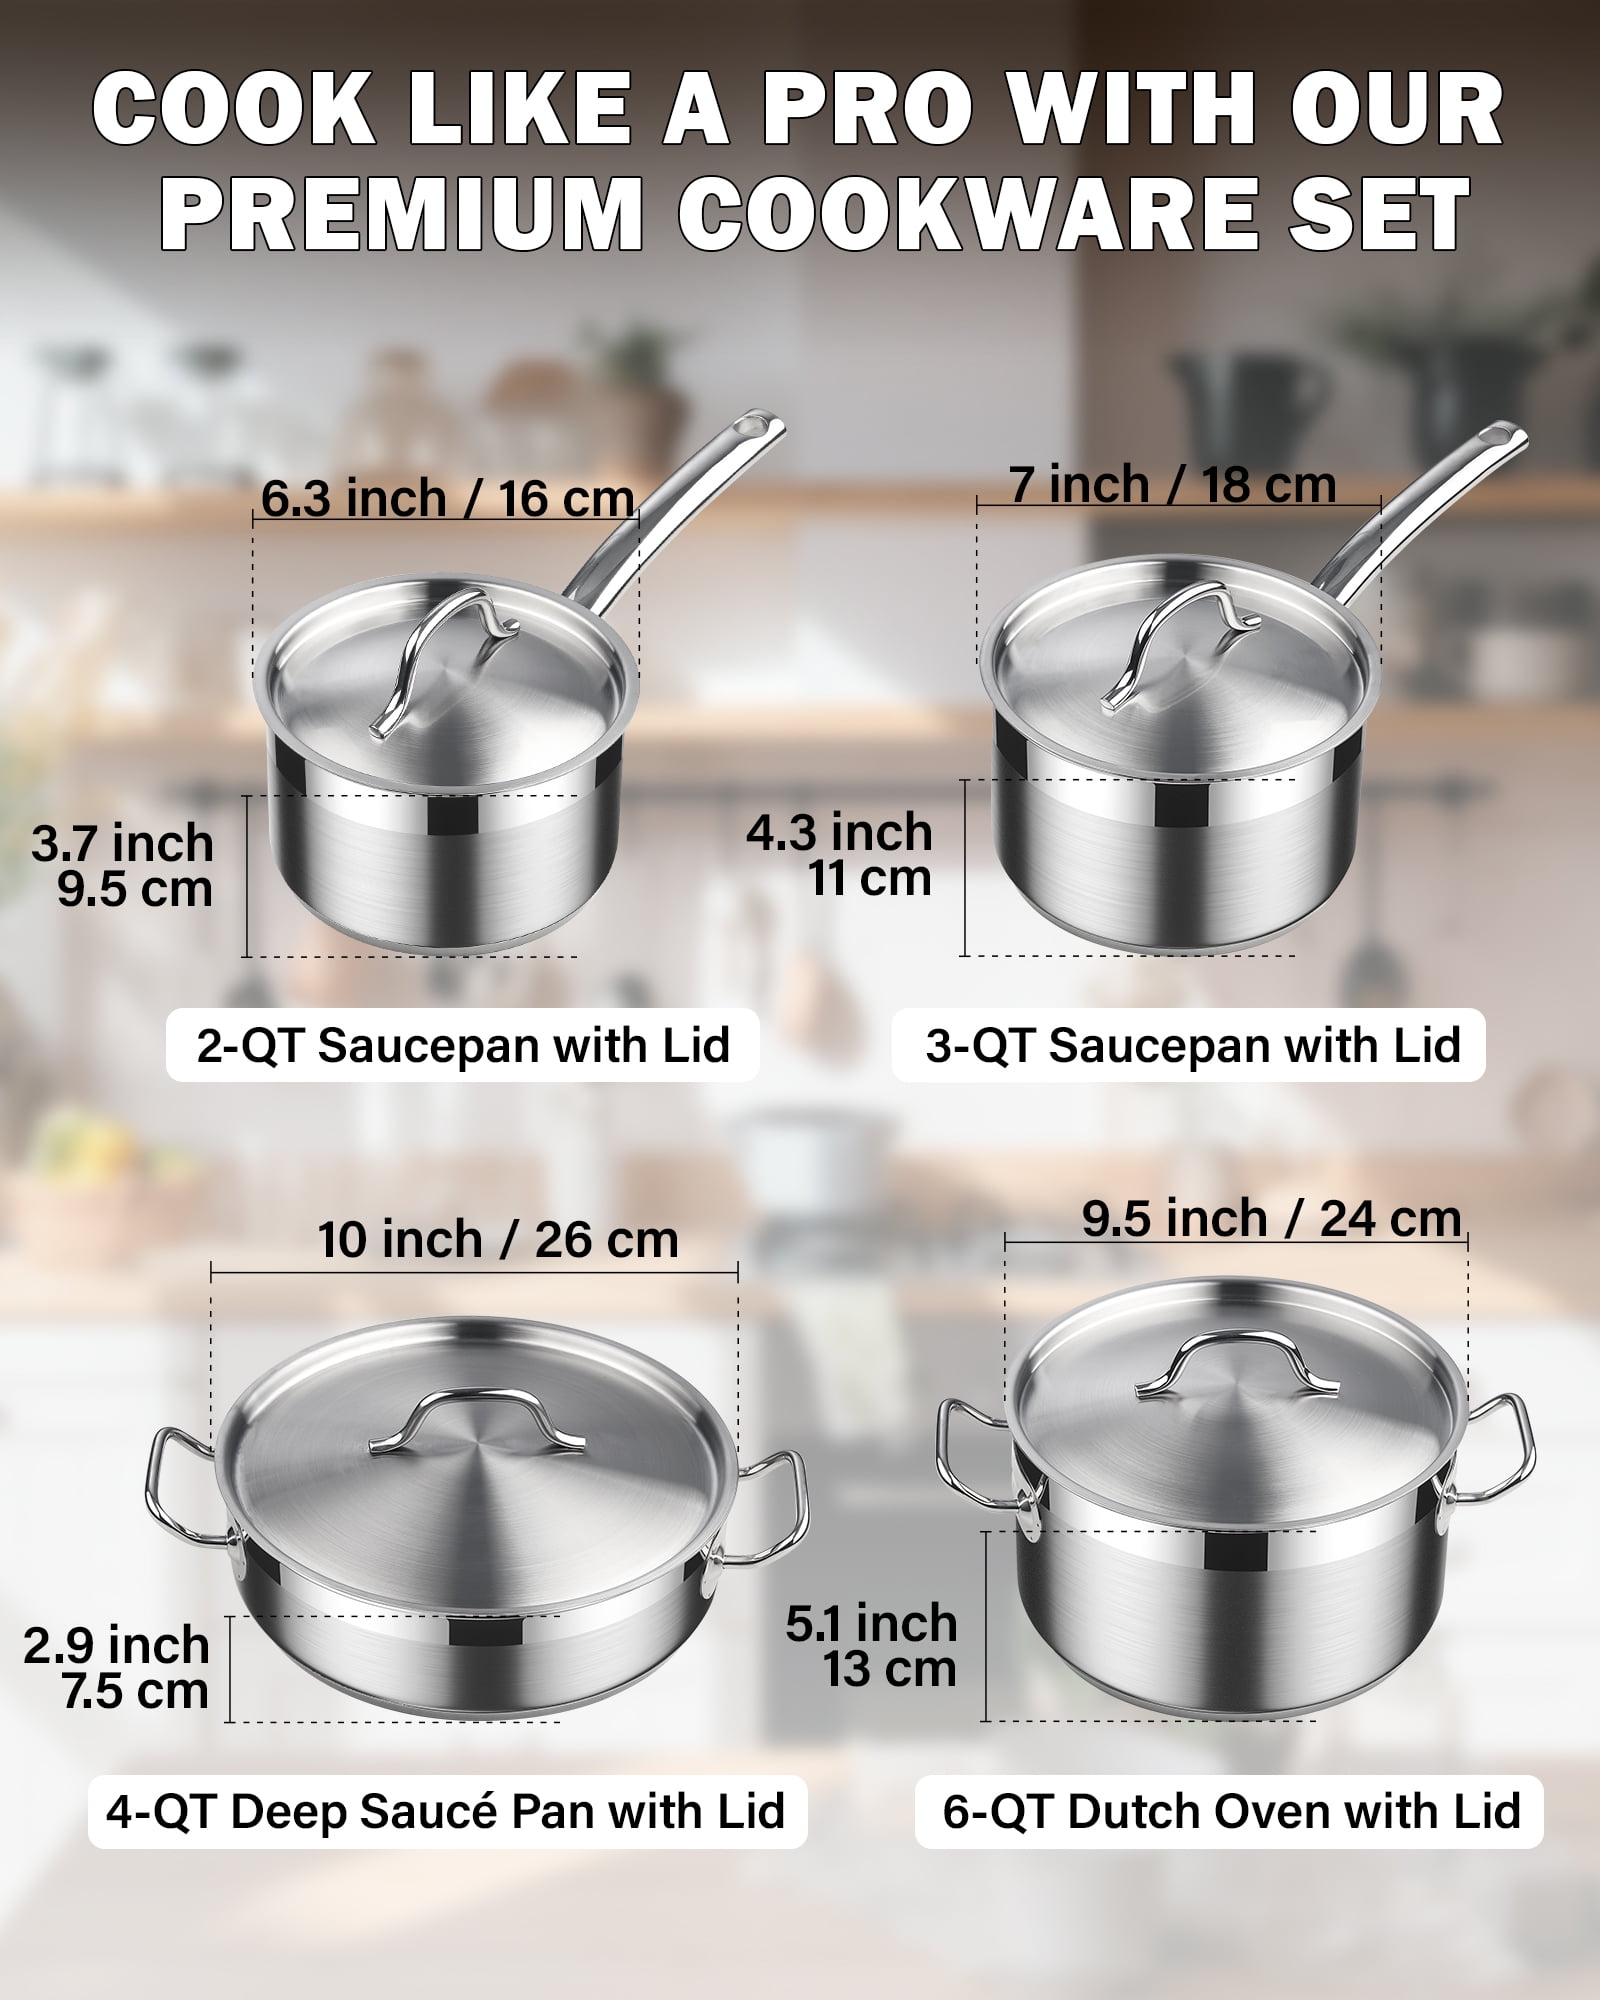 Induction Cookware Pots & Pans Set 10 Piece, BEZIA Dishwasher Safe